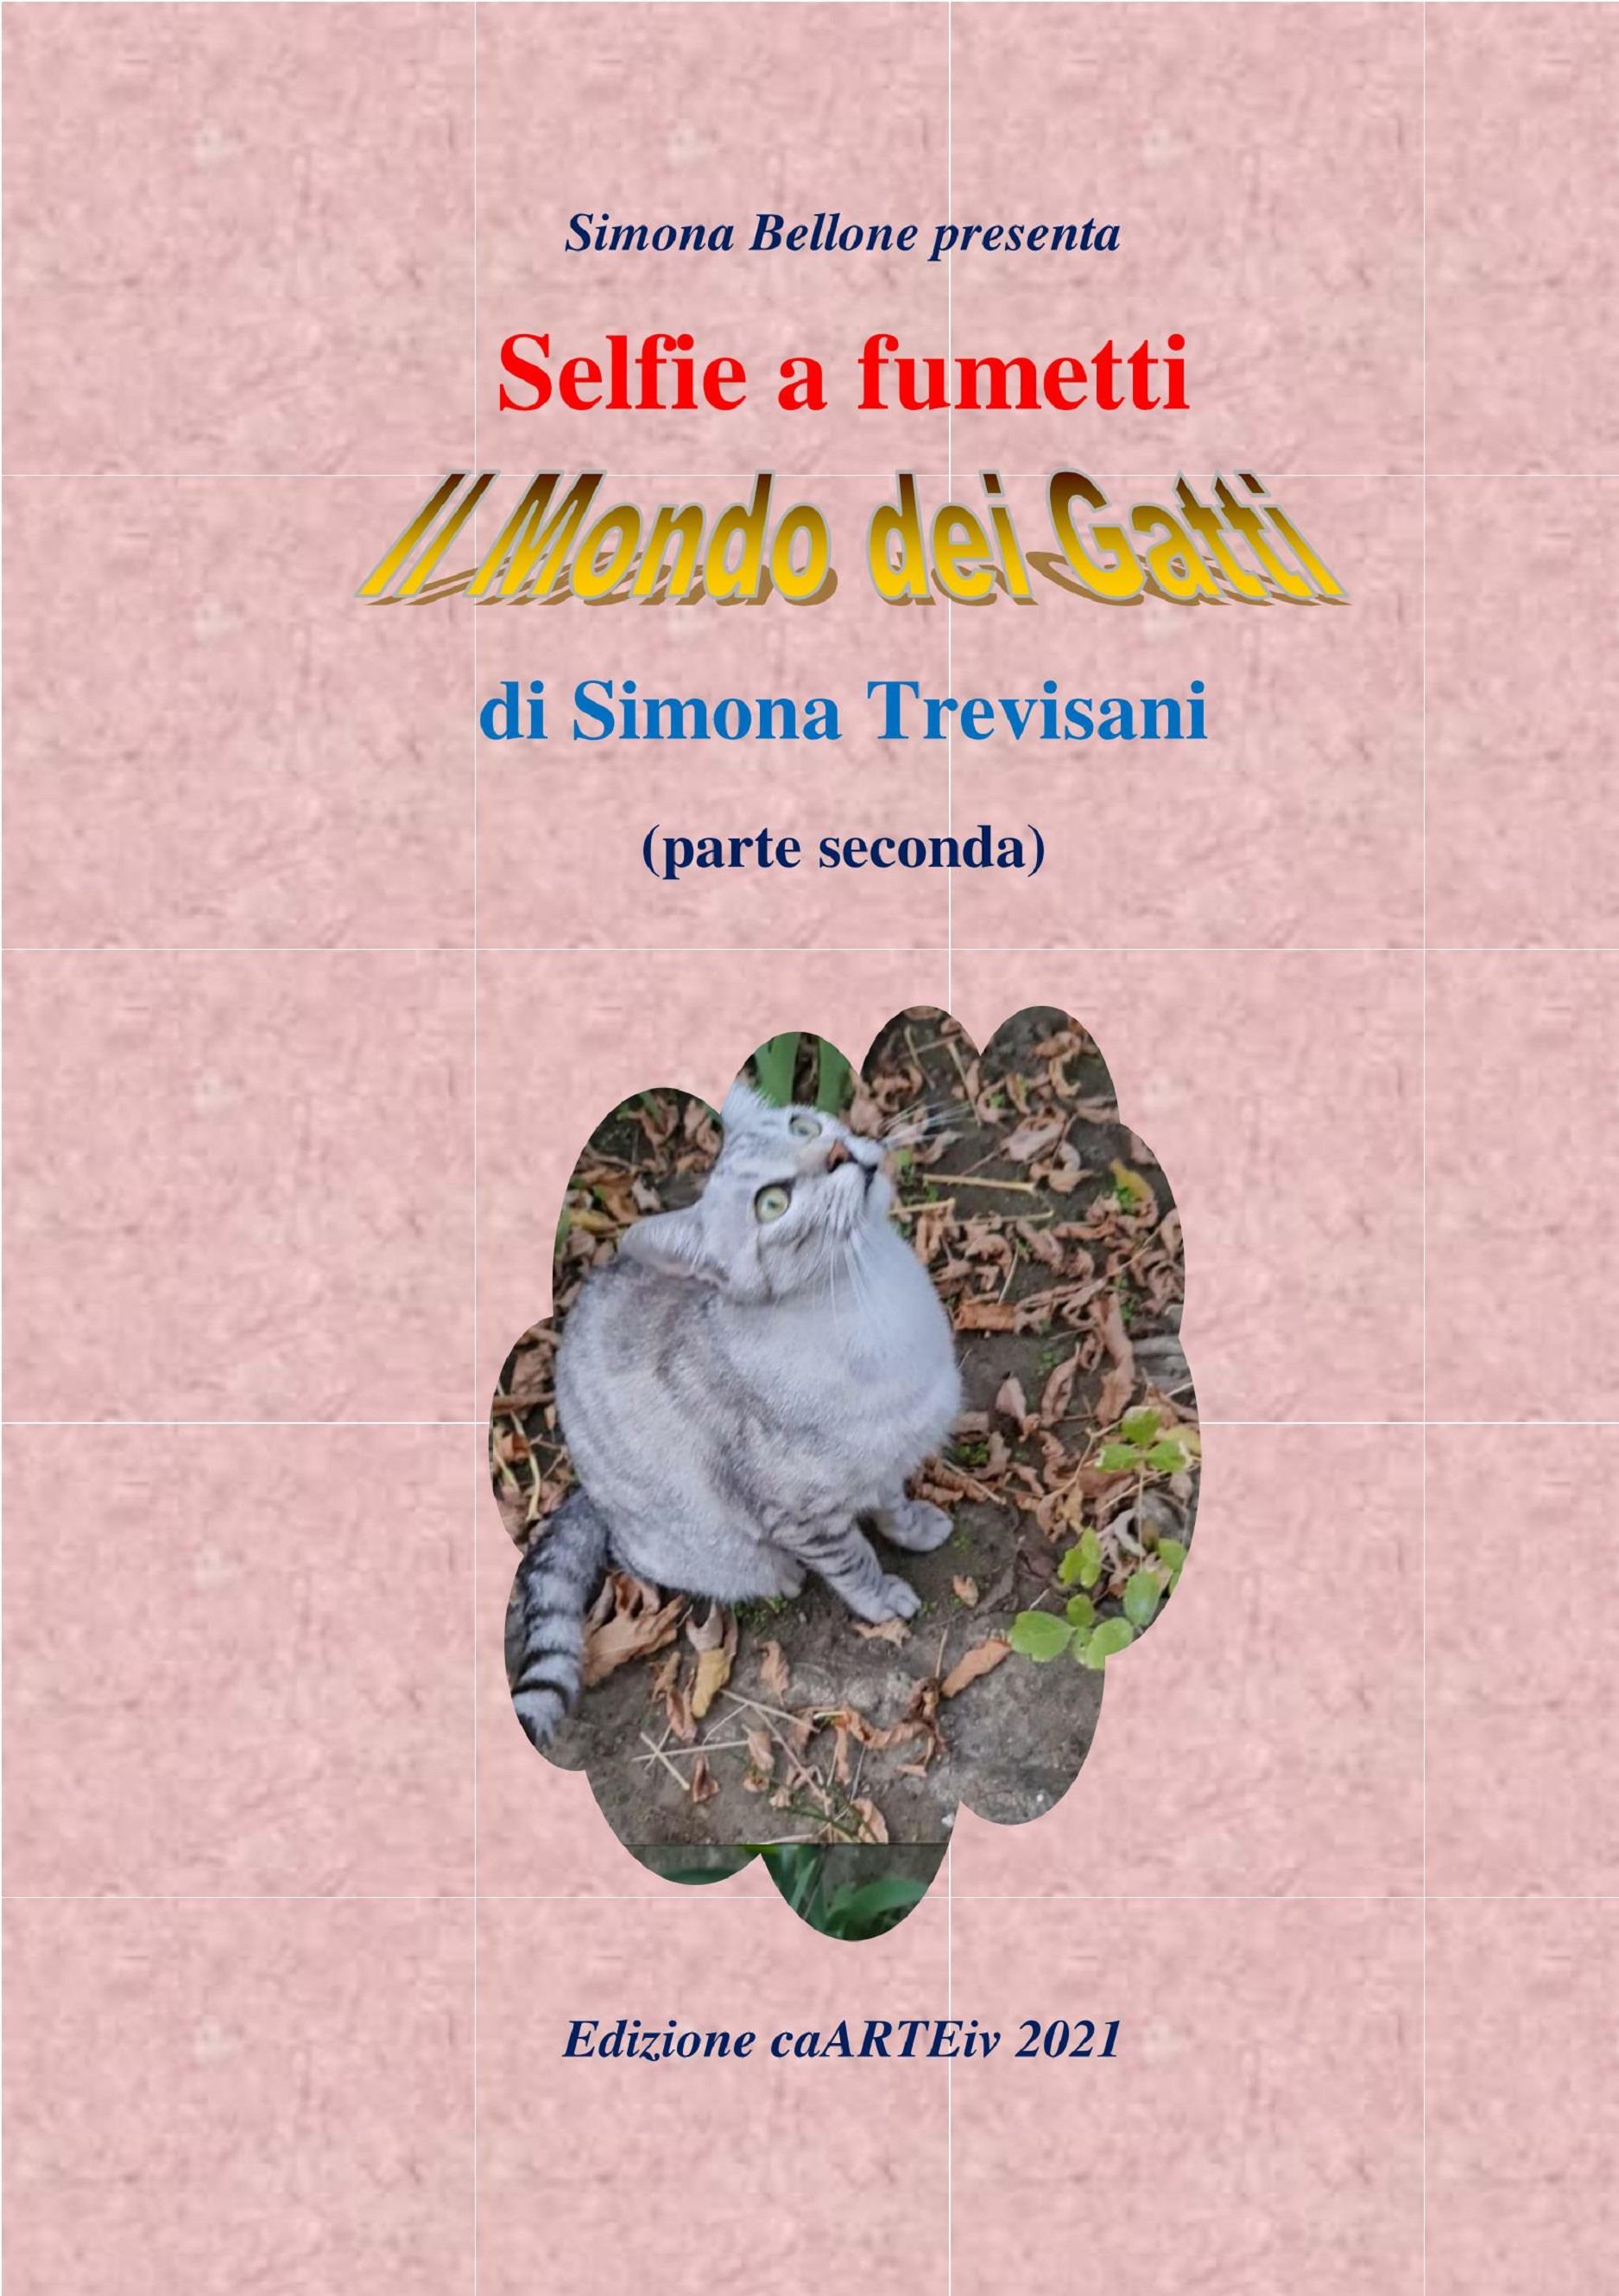 Selfie a fumetti. Il mondo dei gatti. (parte seconda) di Simona Trevisani